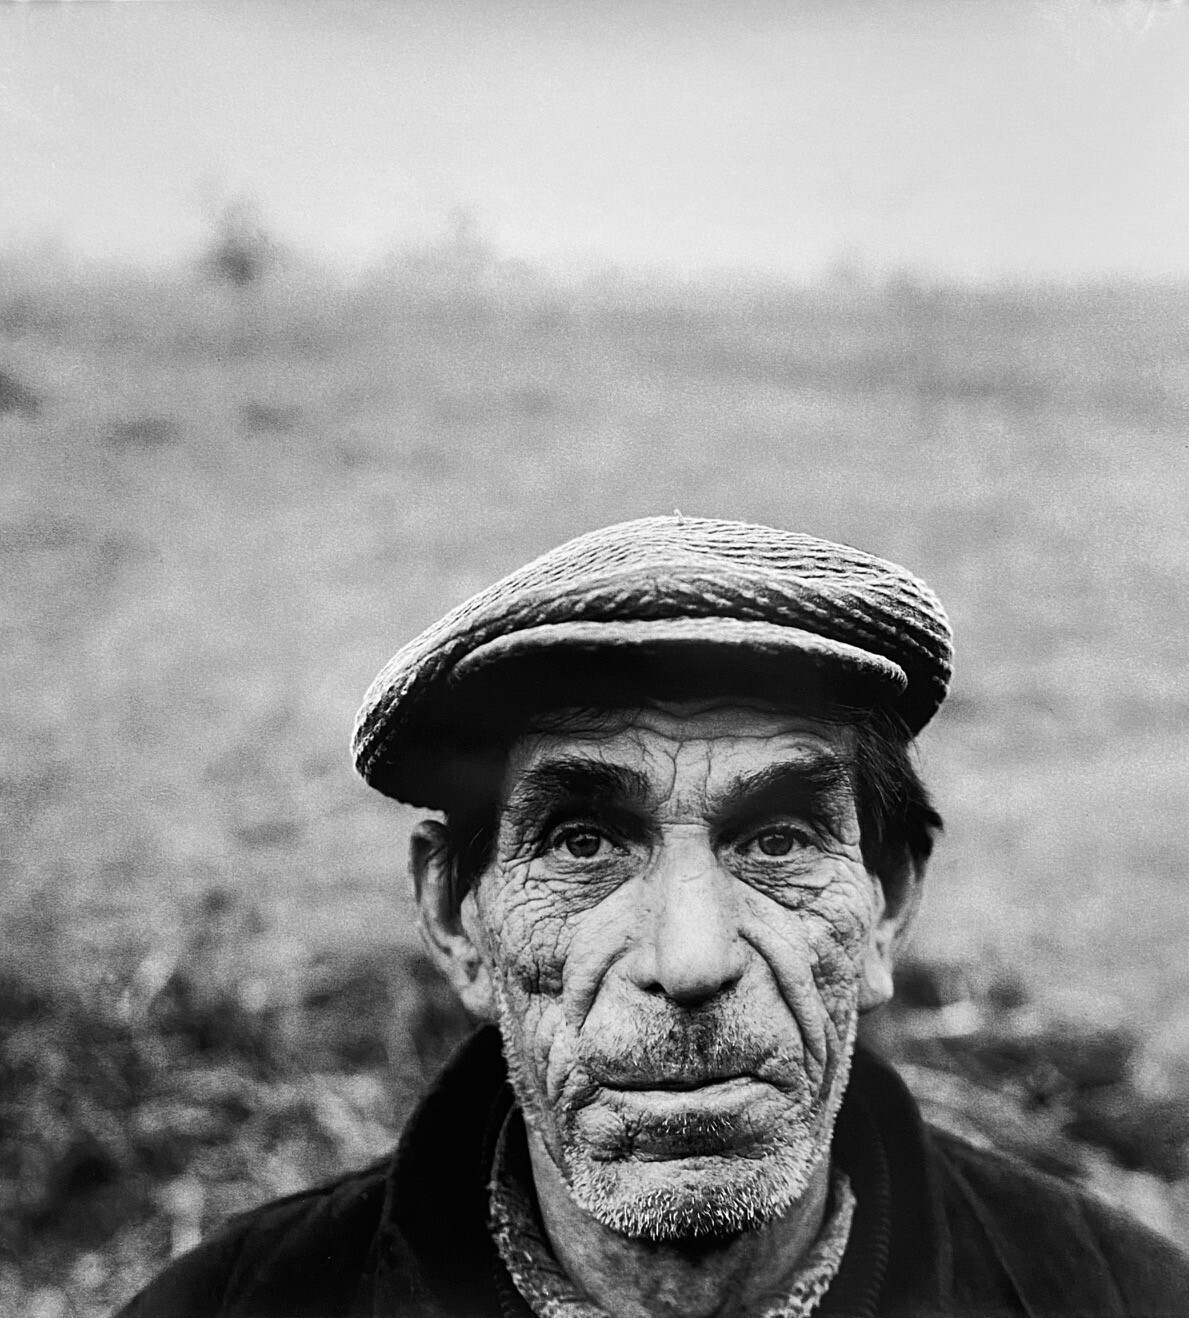 Портрет земледельца, Дзукия, 1969 год, фотограф Антанас Суткус